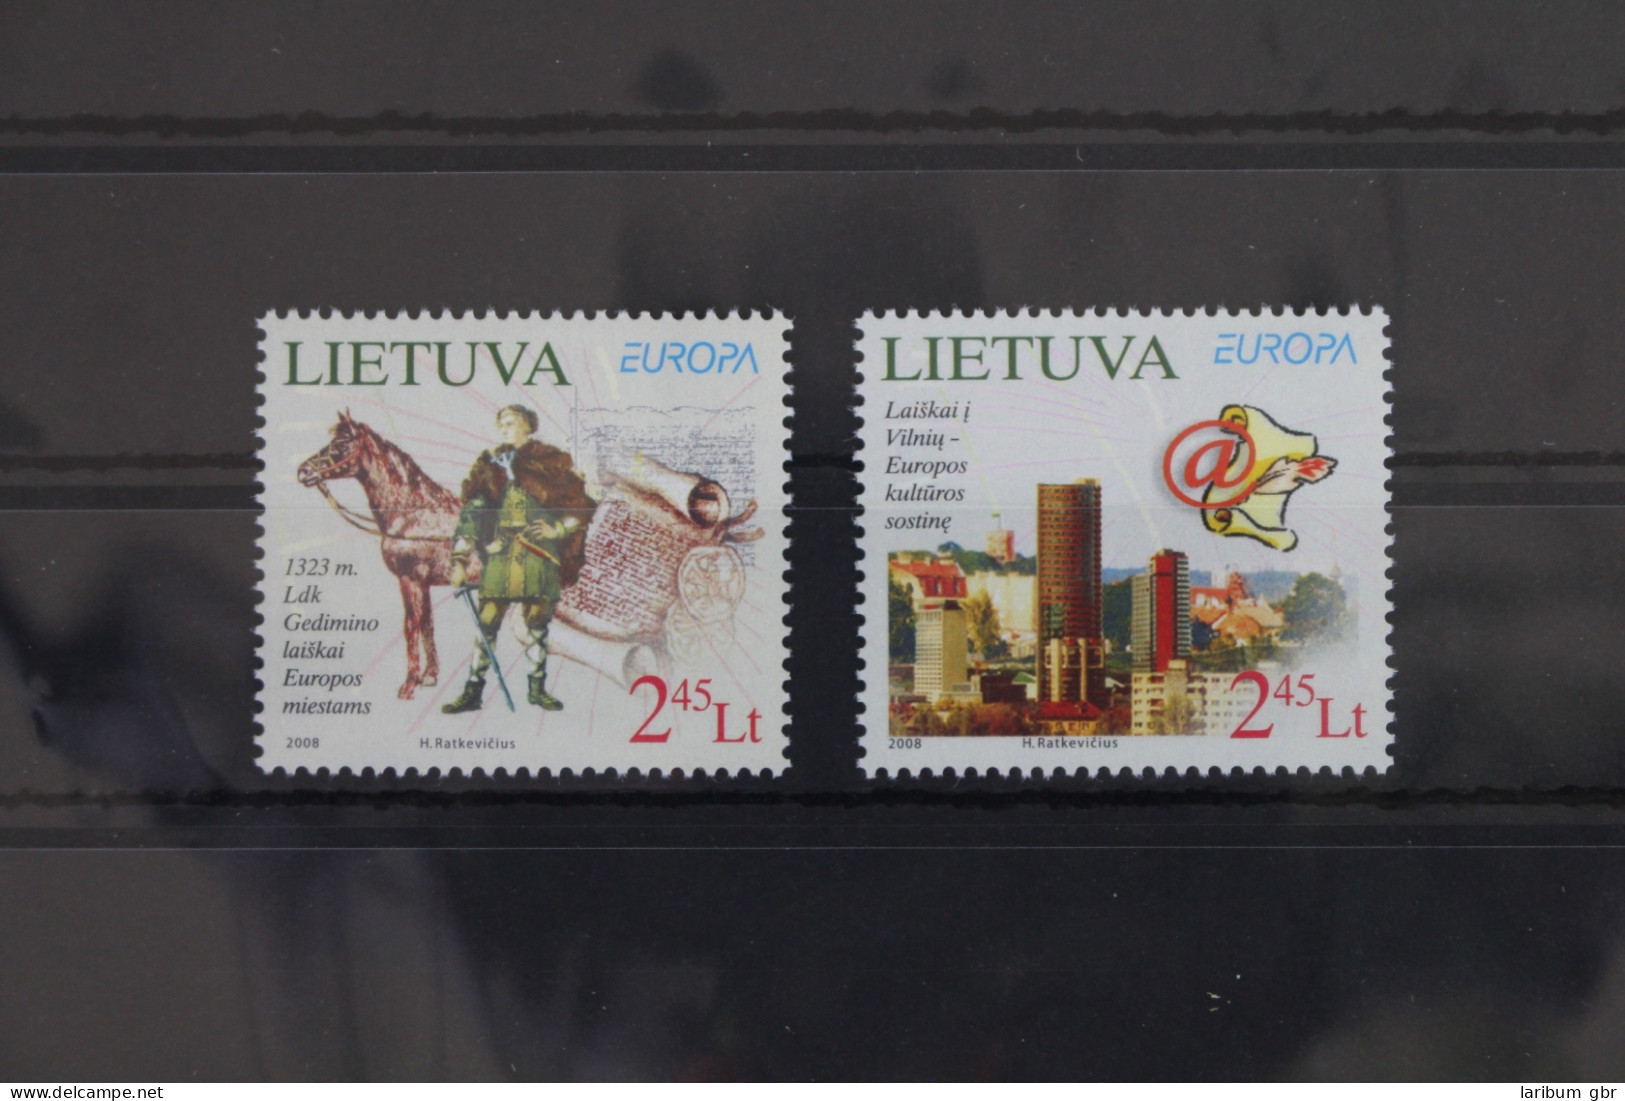 Litauen 970-971 Postfrisch Europa Der Brief #VT334 - Lituanie